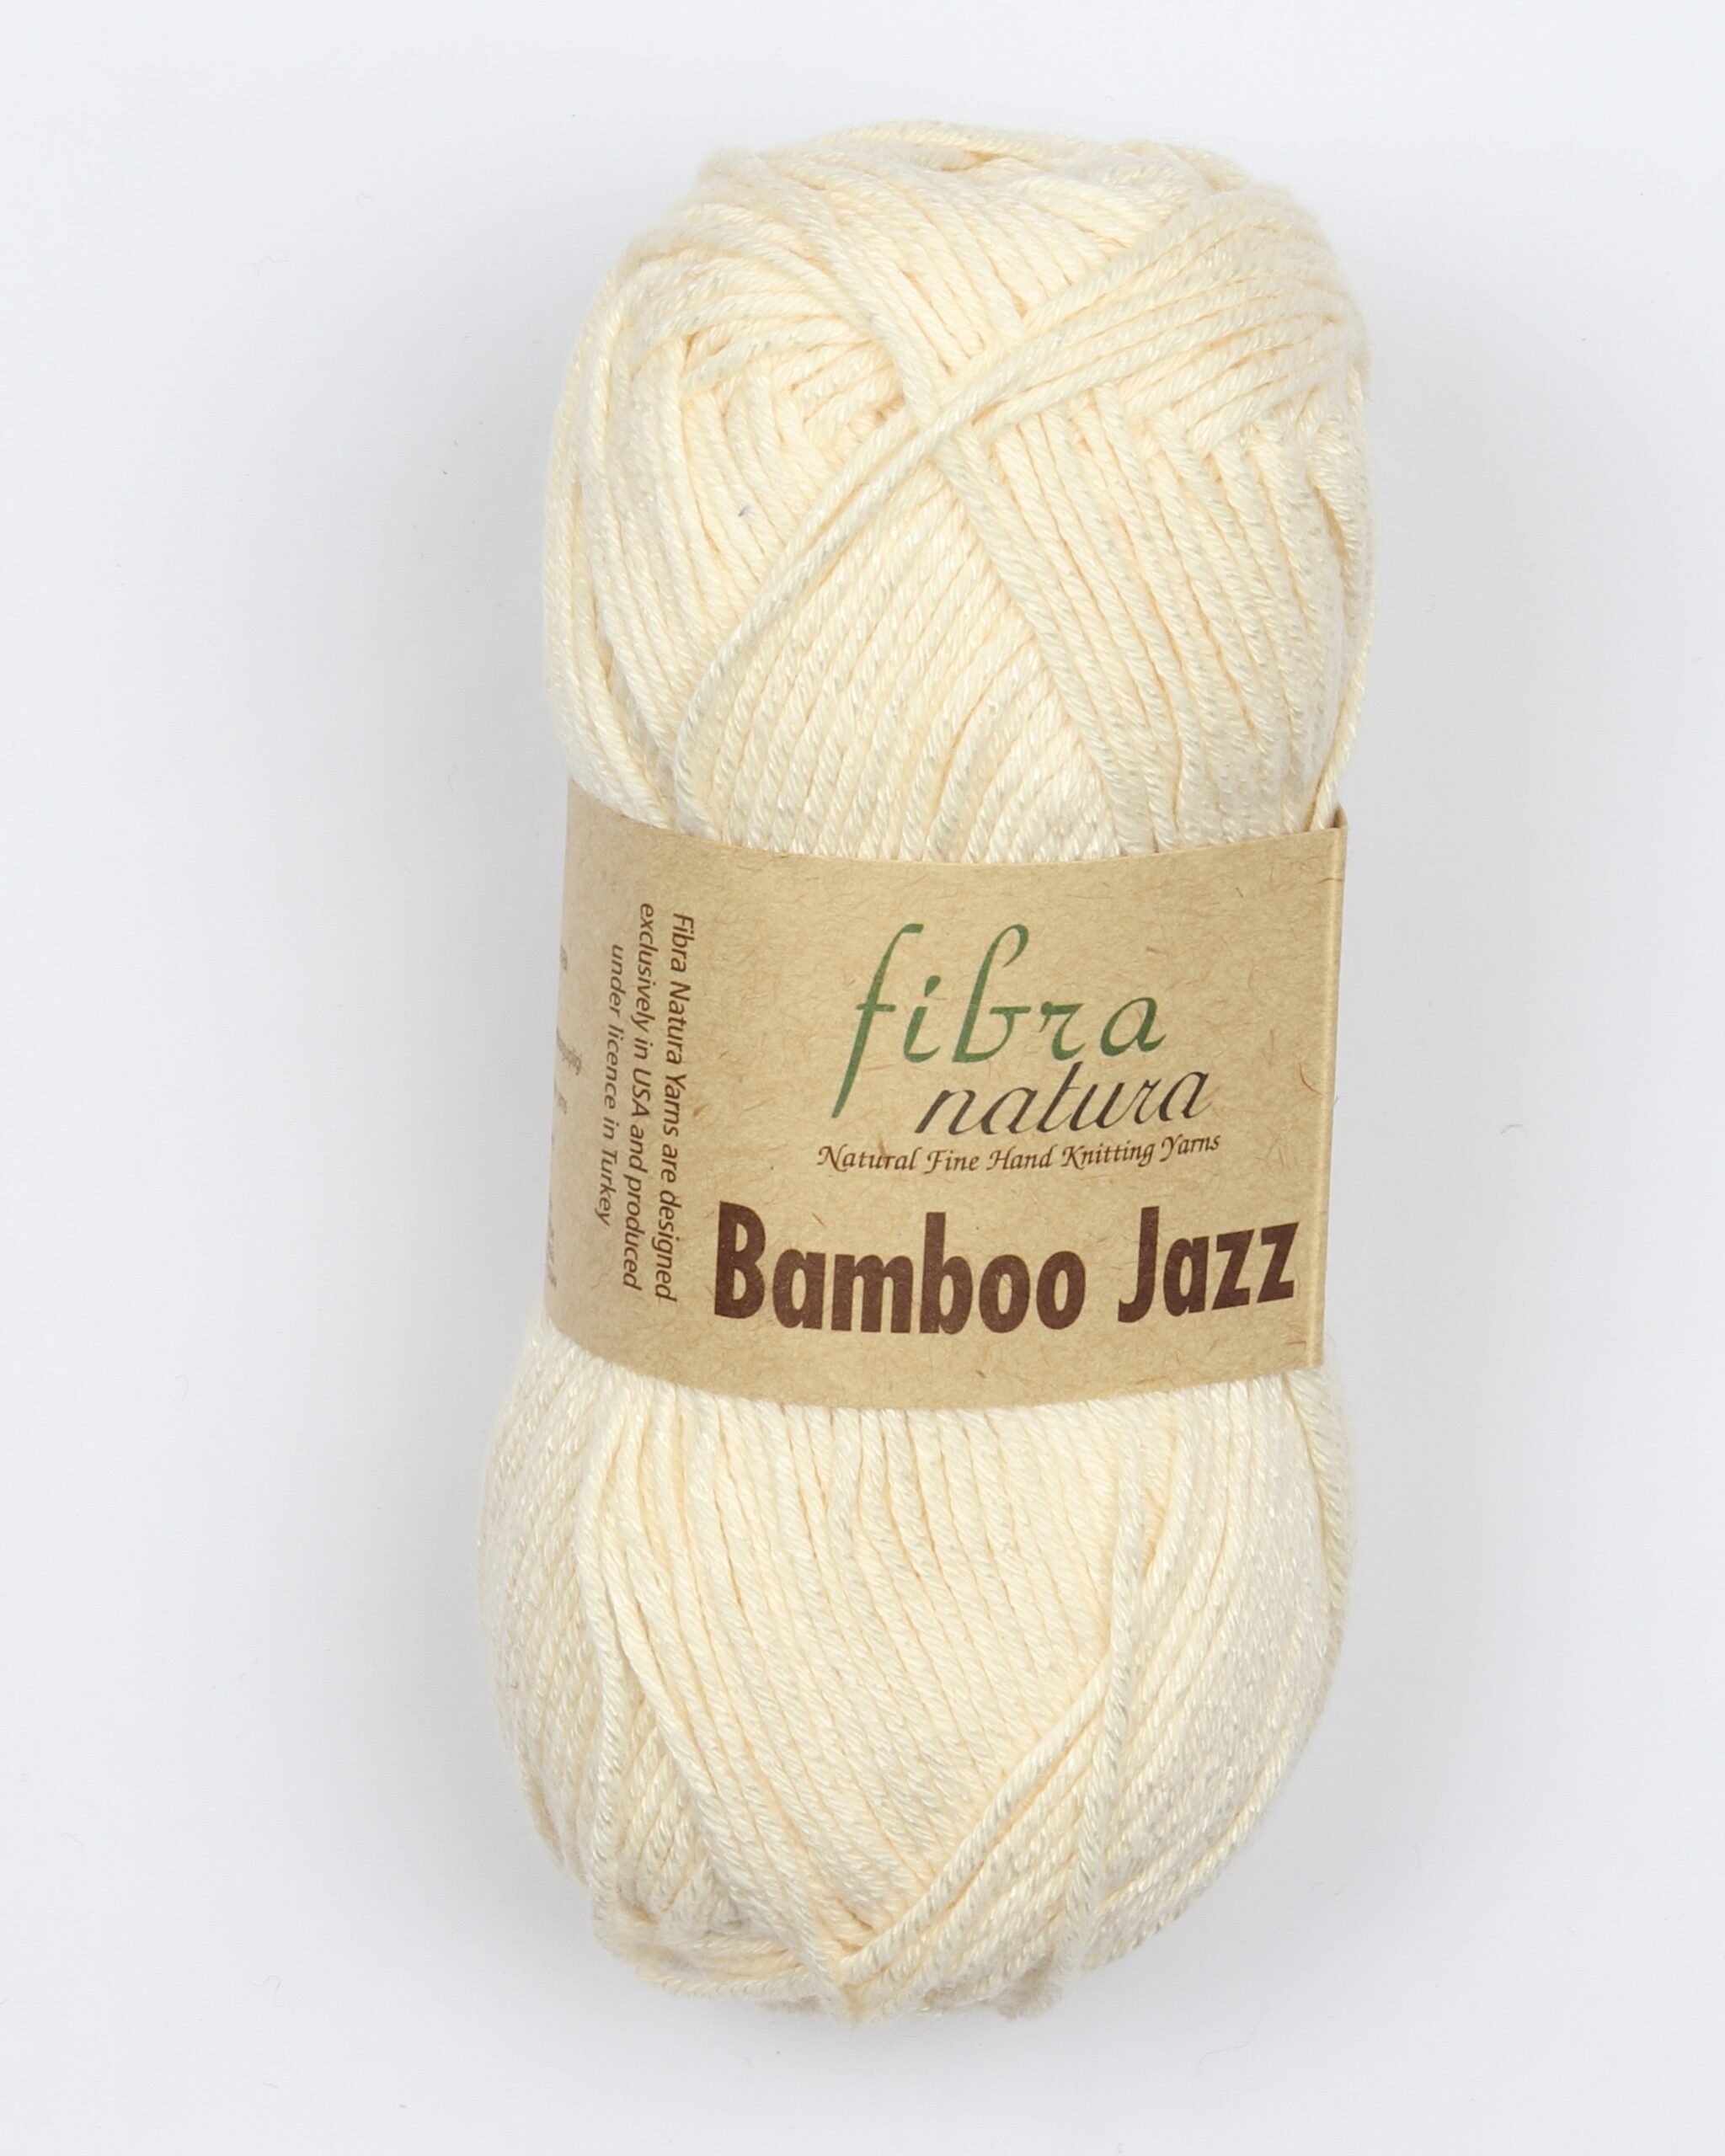 værdig matchmaker Sui Fibra Natura Bamboo Jazz Fra CeWec I Mange Farver - 202 Offwhite - 50%  Bambus, 50% Bomuld til 35 DKK